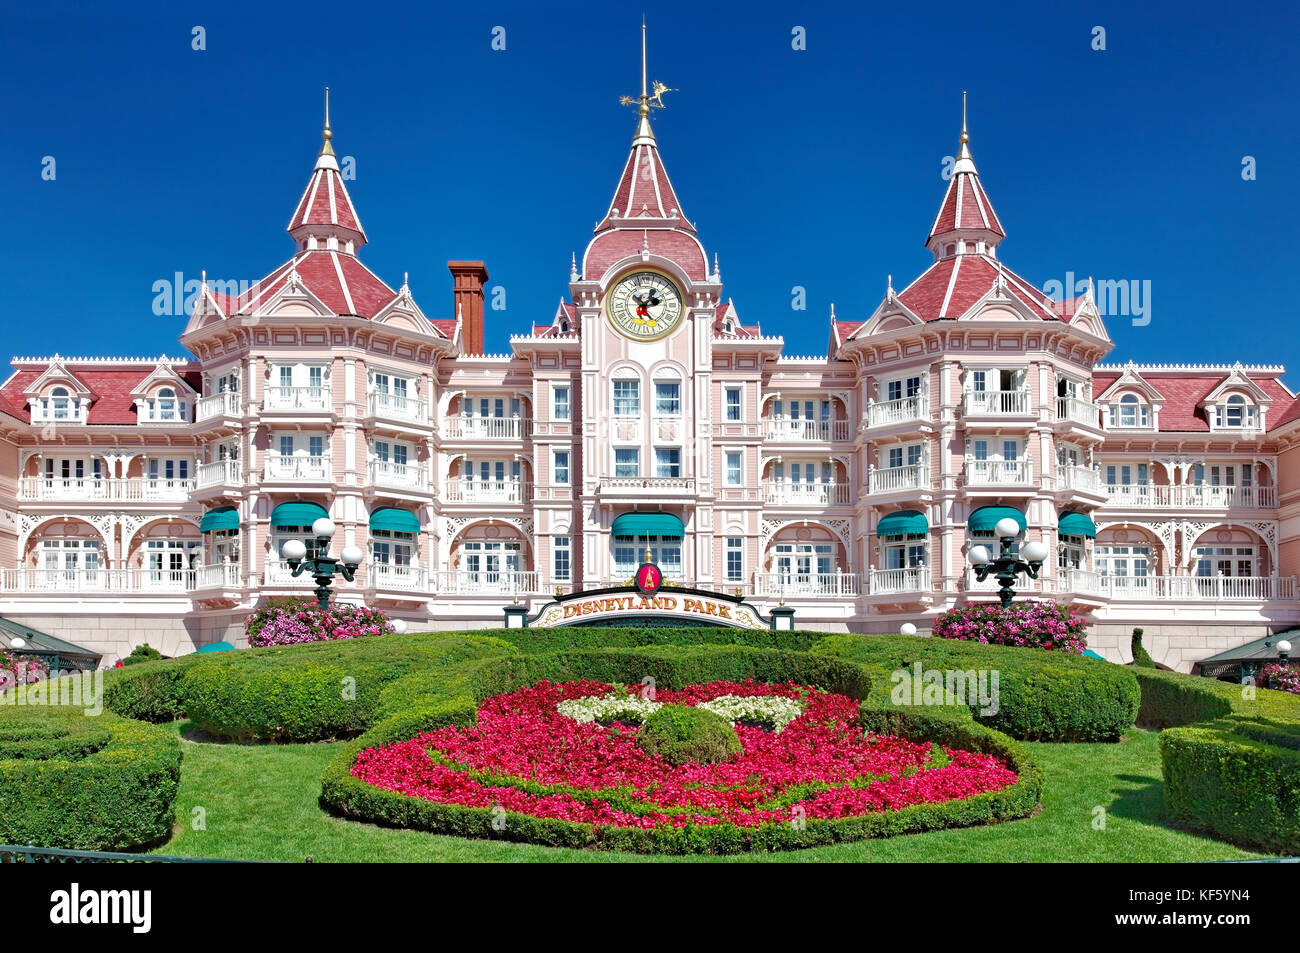 Image de l'entrée dans le parc Disneyland de paris. Banque D'Images